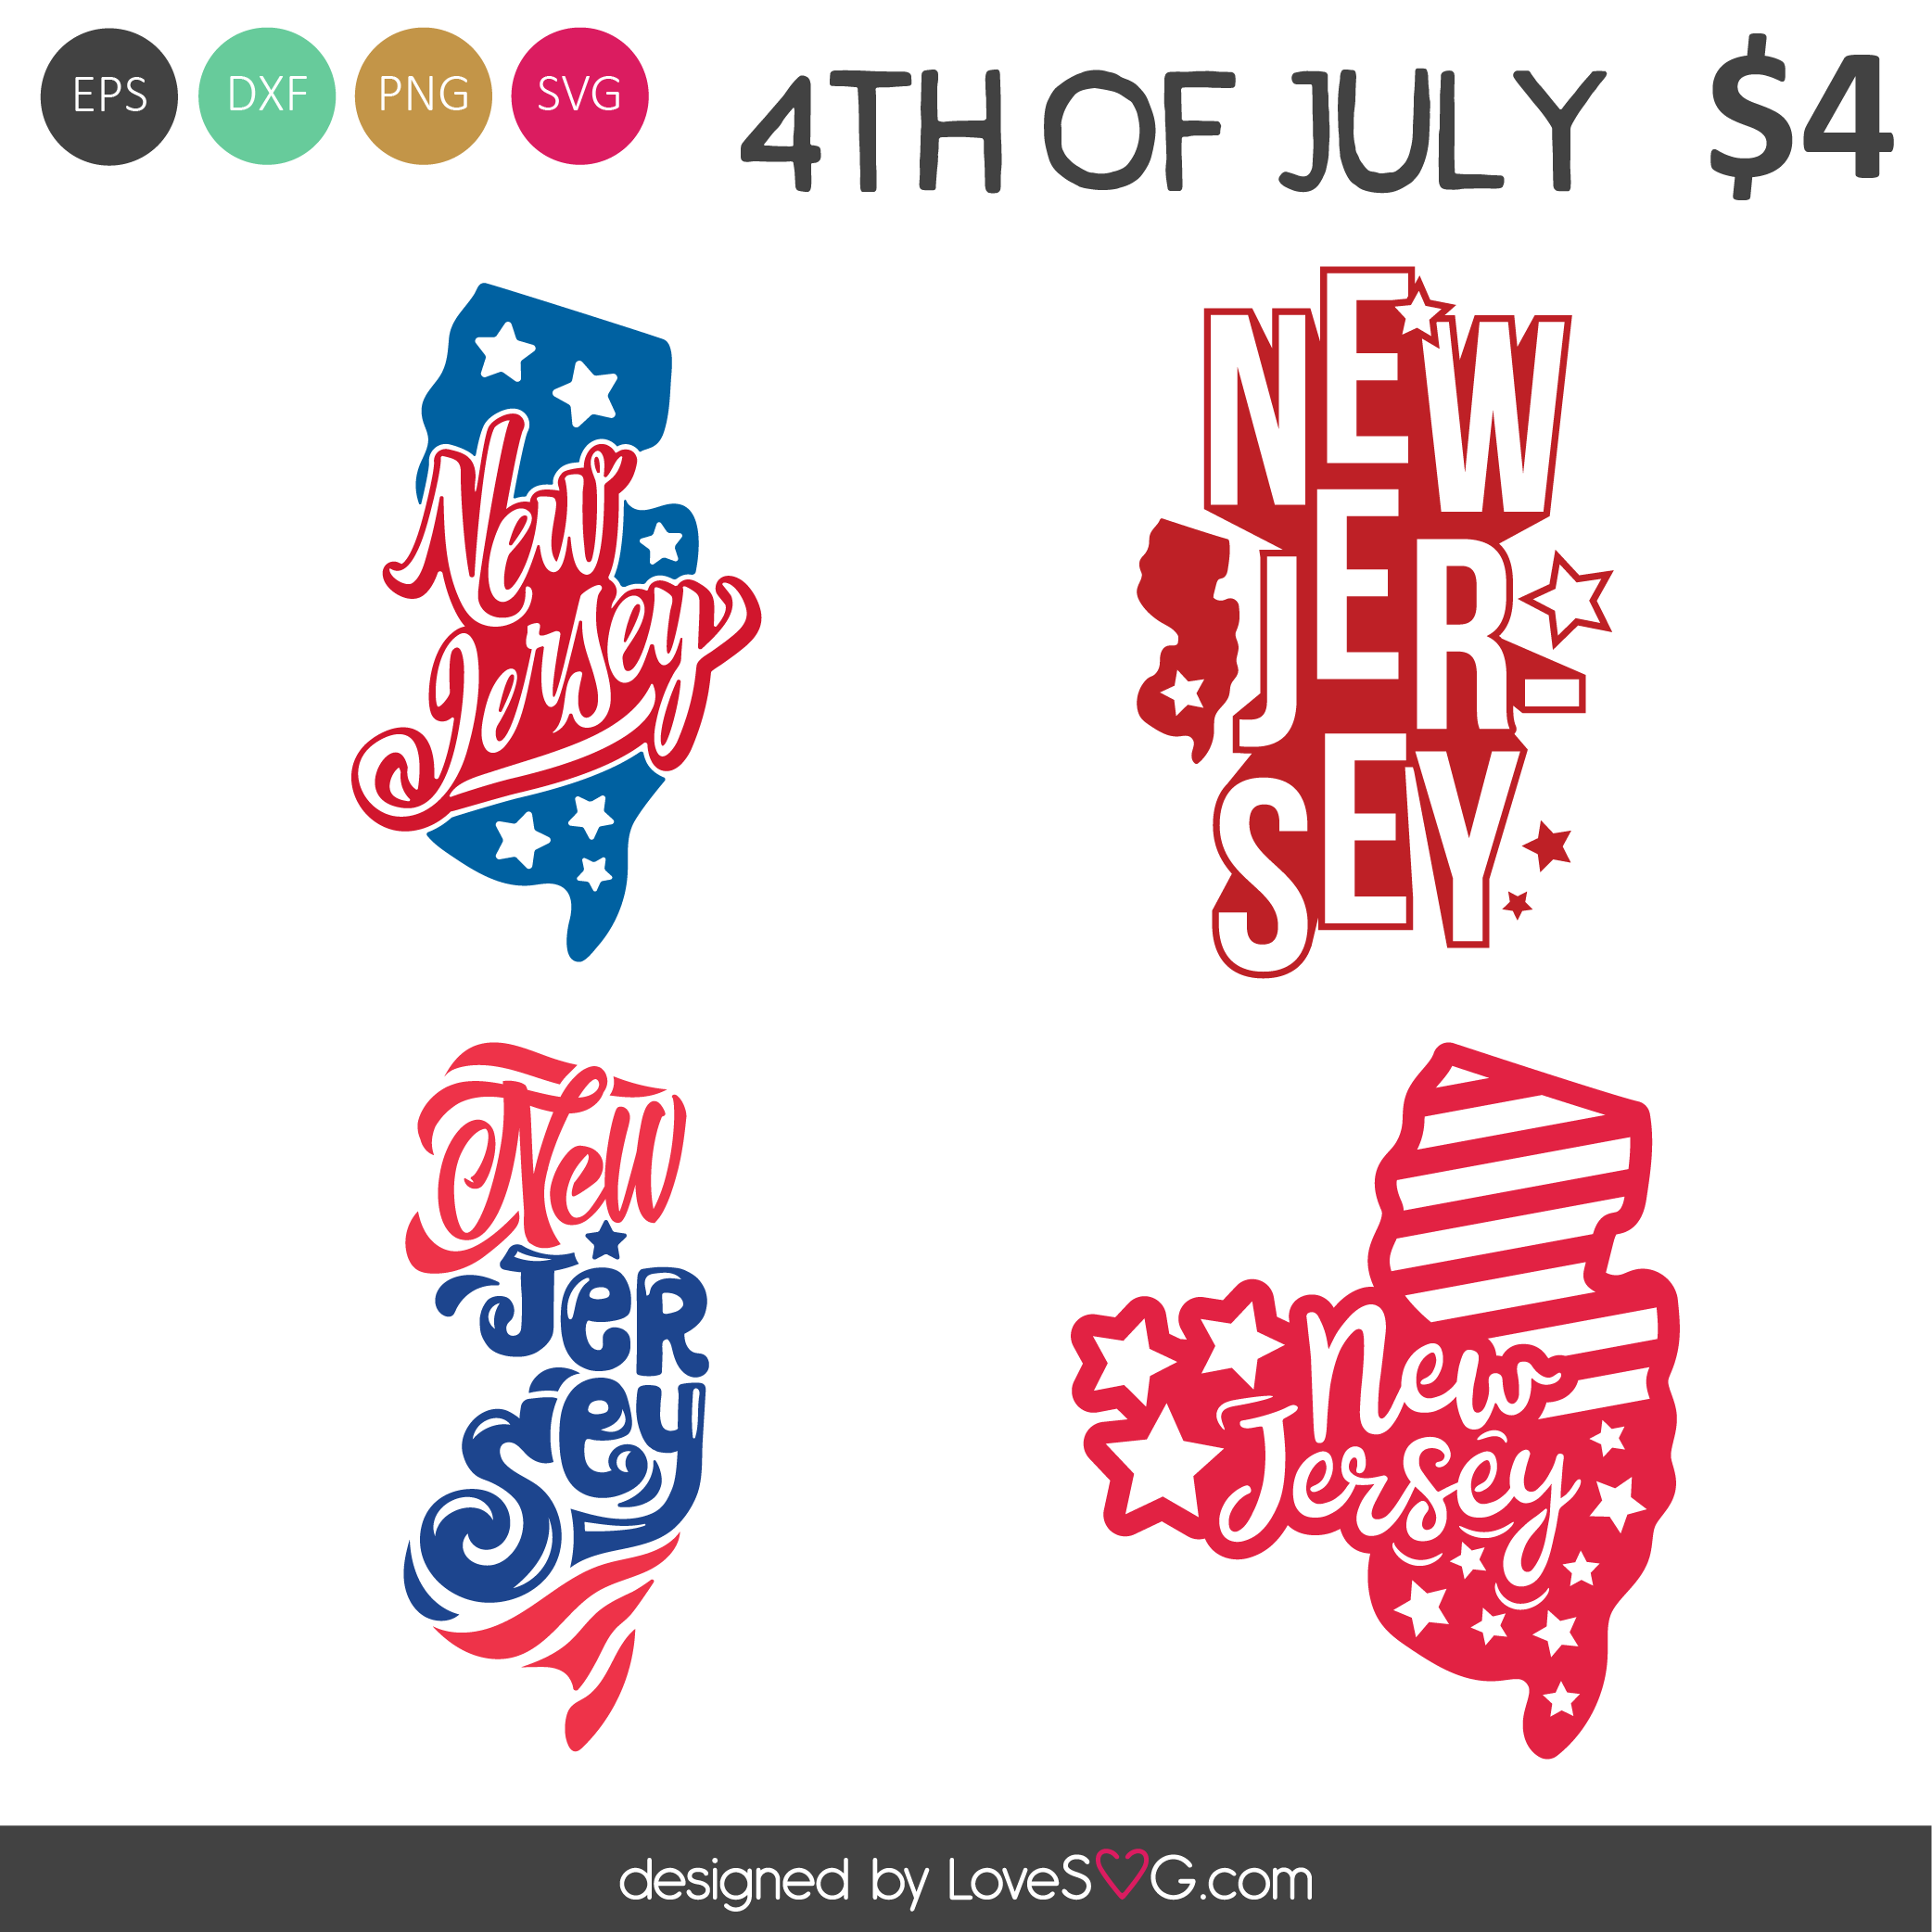 New Jersey SVG Cut Files - Lovesvg.com